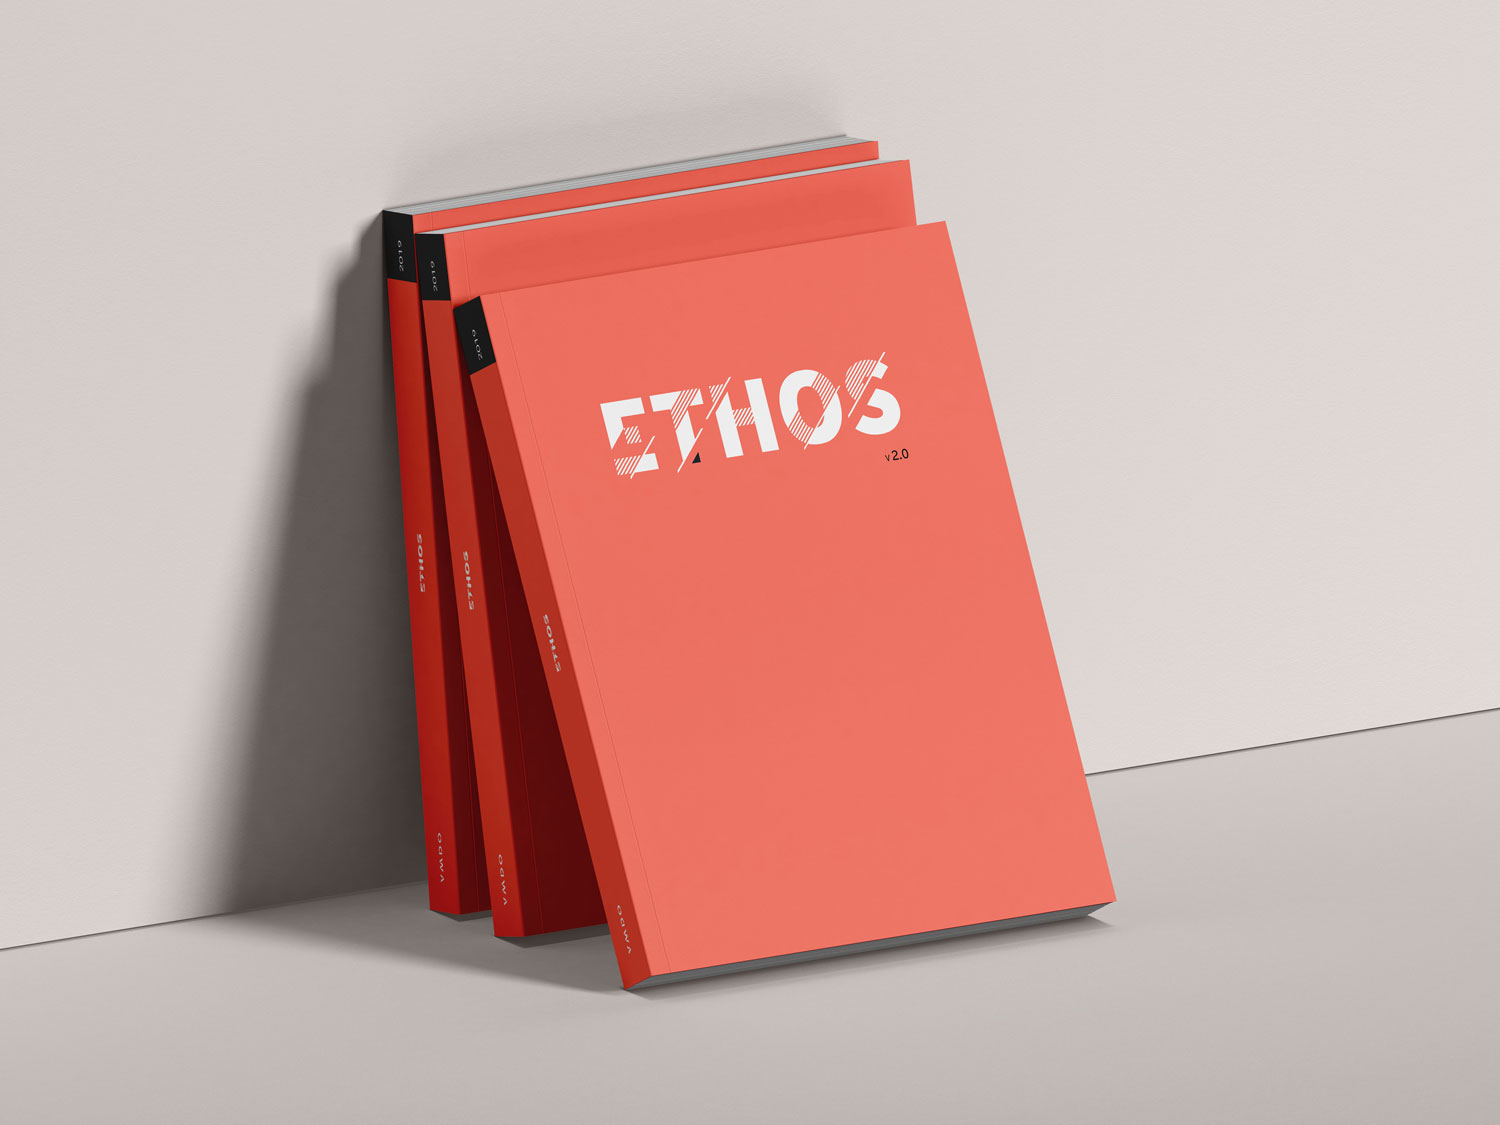 Ethos v.2.0: A Forum for Exploring Design